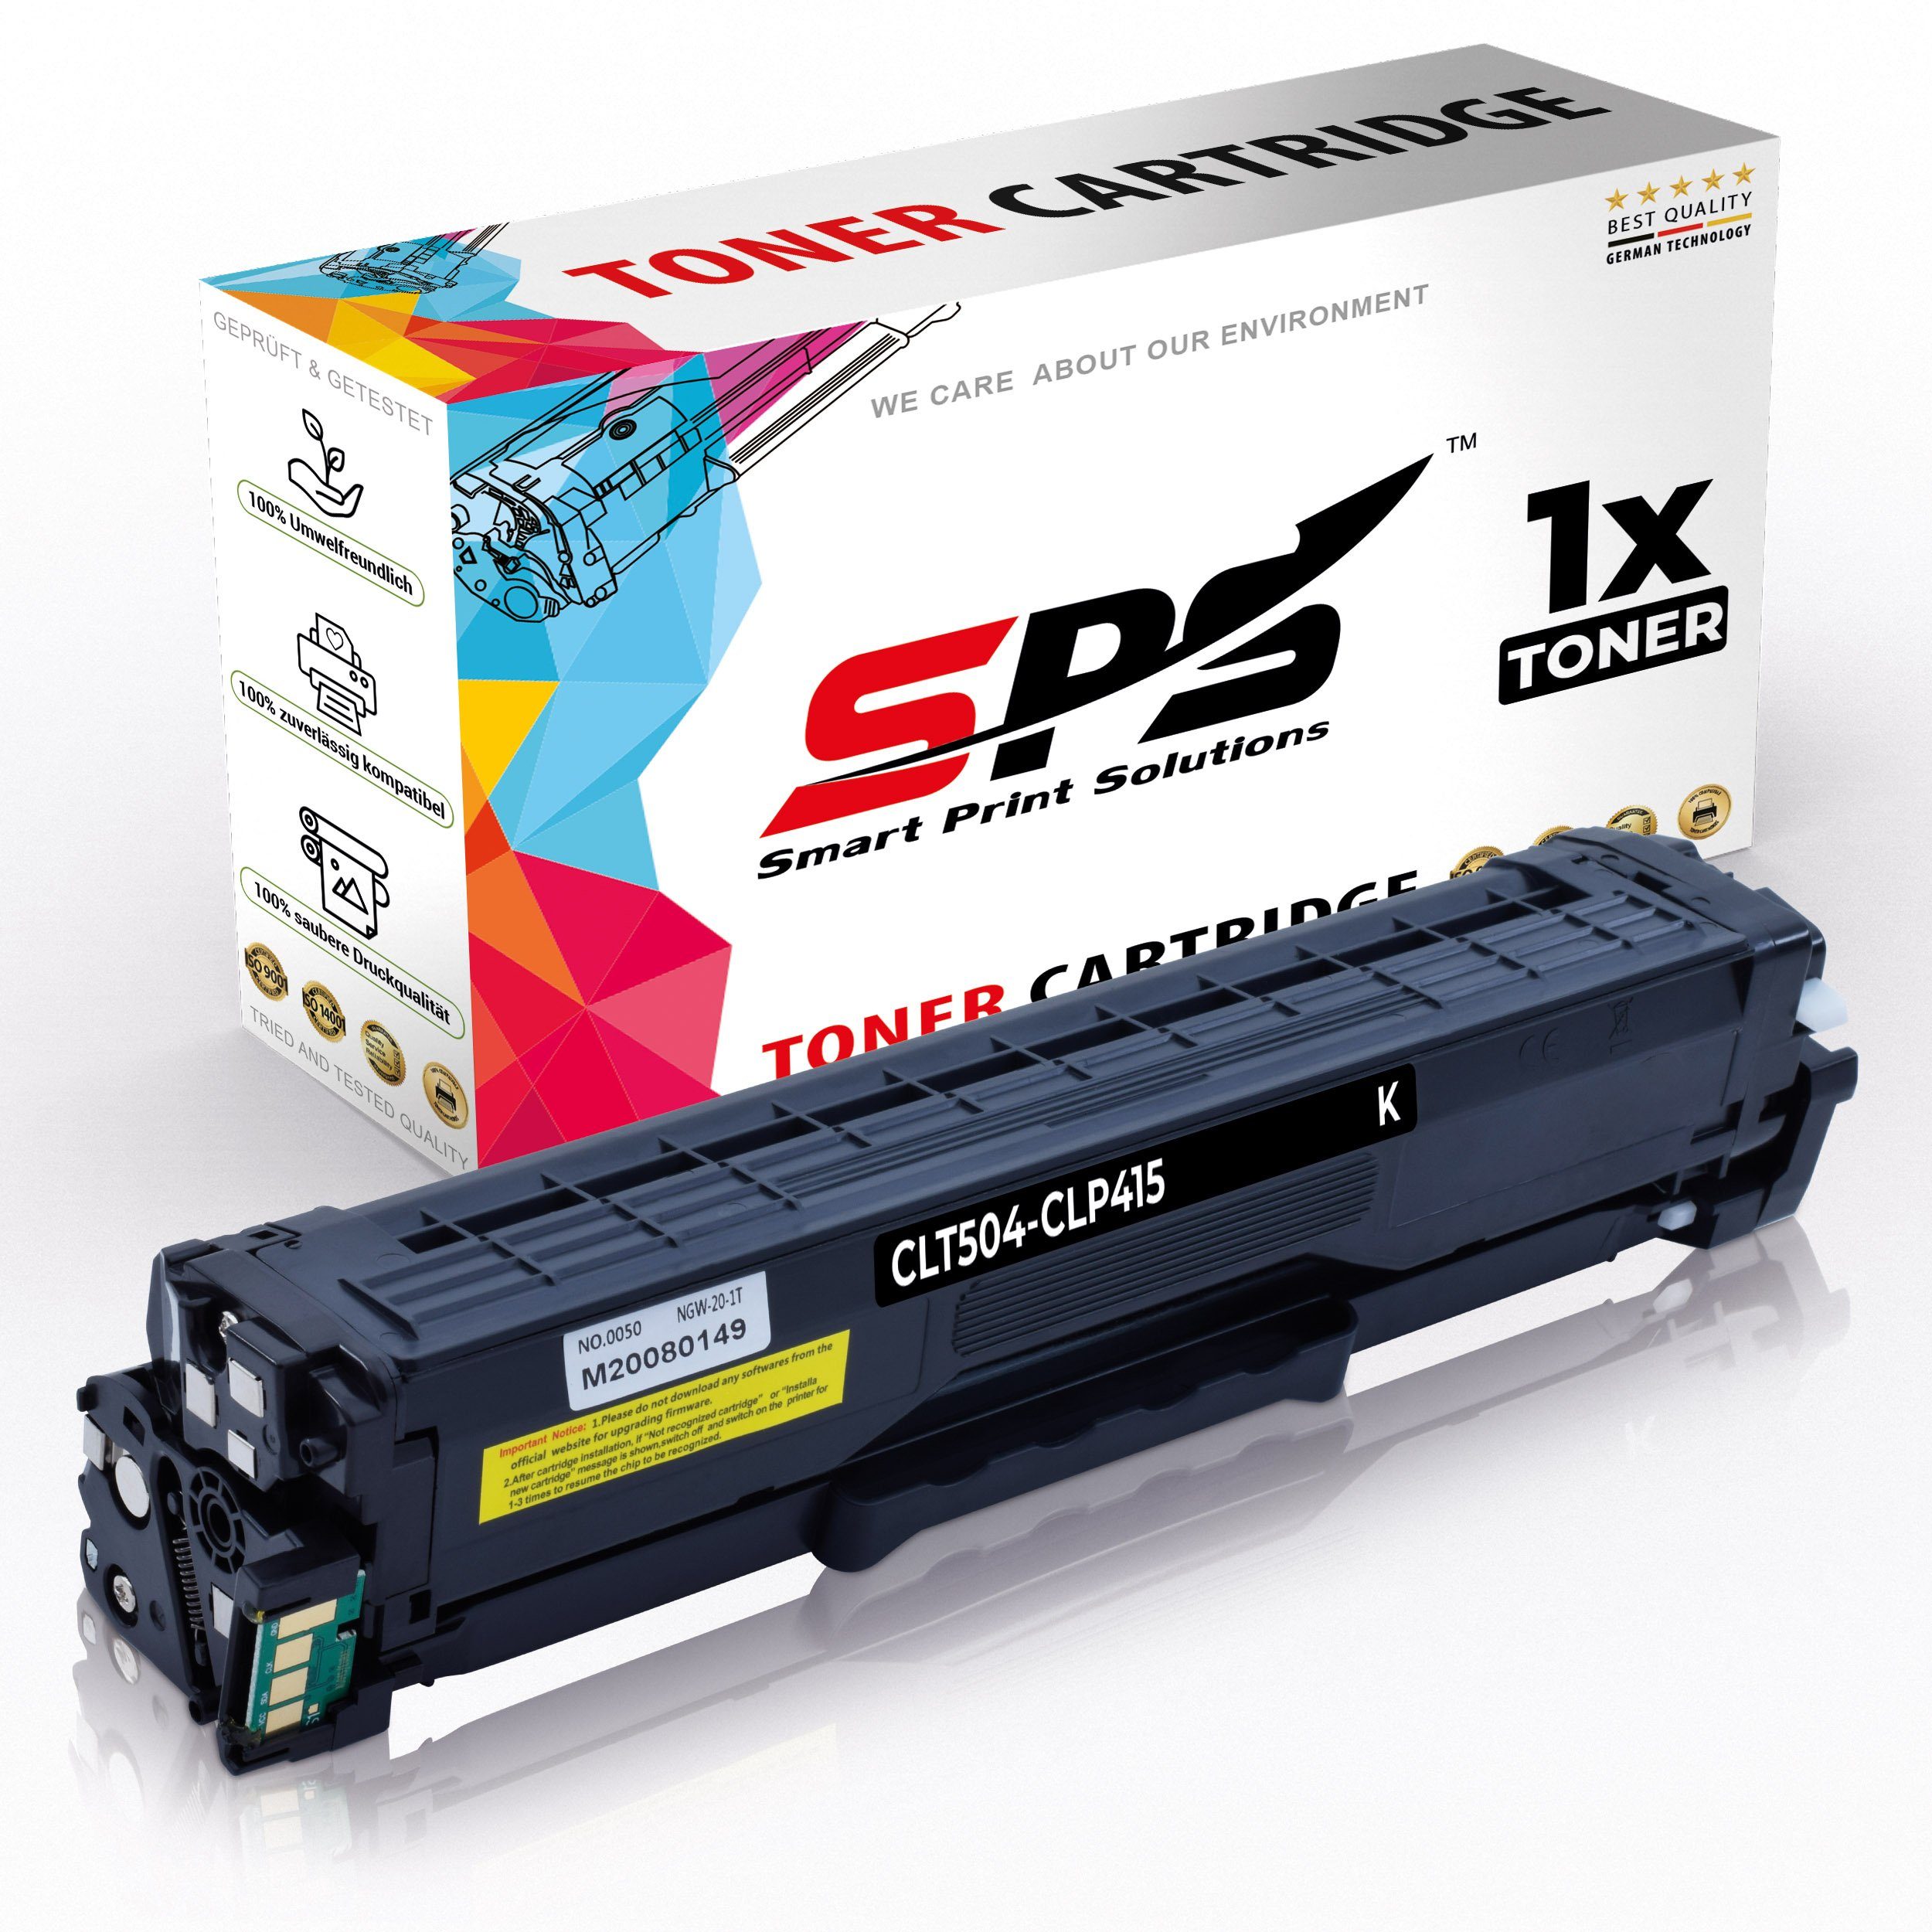 1x Qualitäts Toner Black komp.zu CLT-K504S für HP SAMSUNG Xpress C1810 